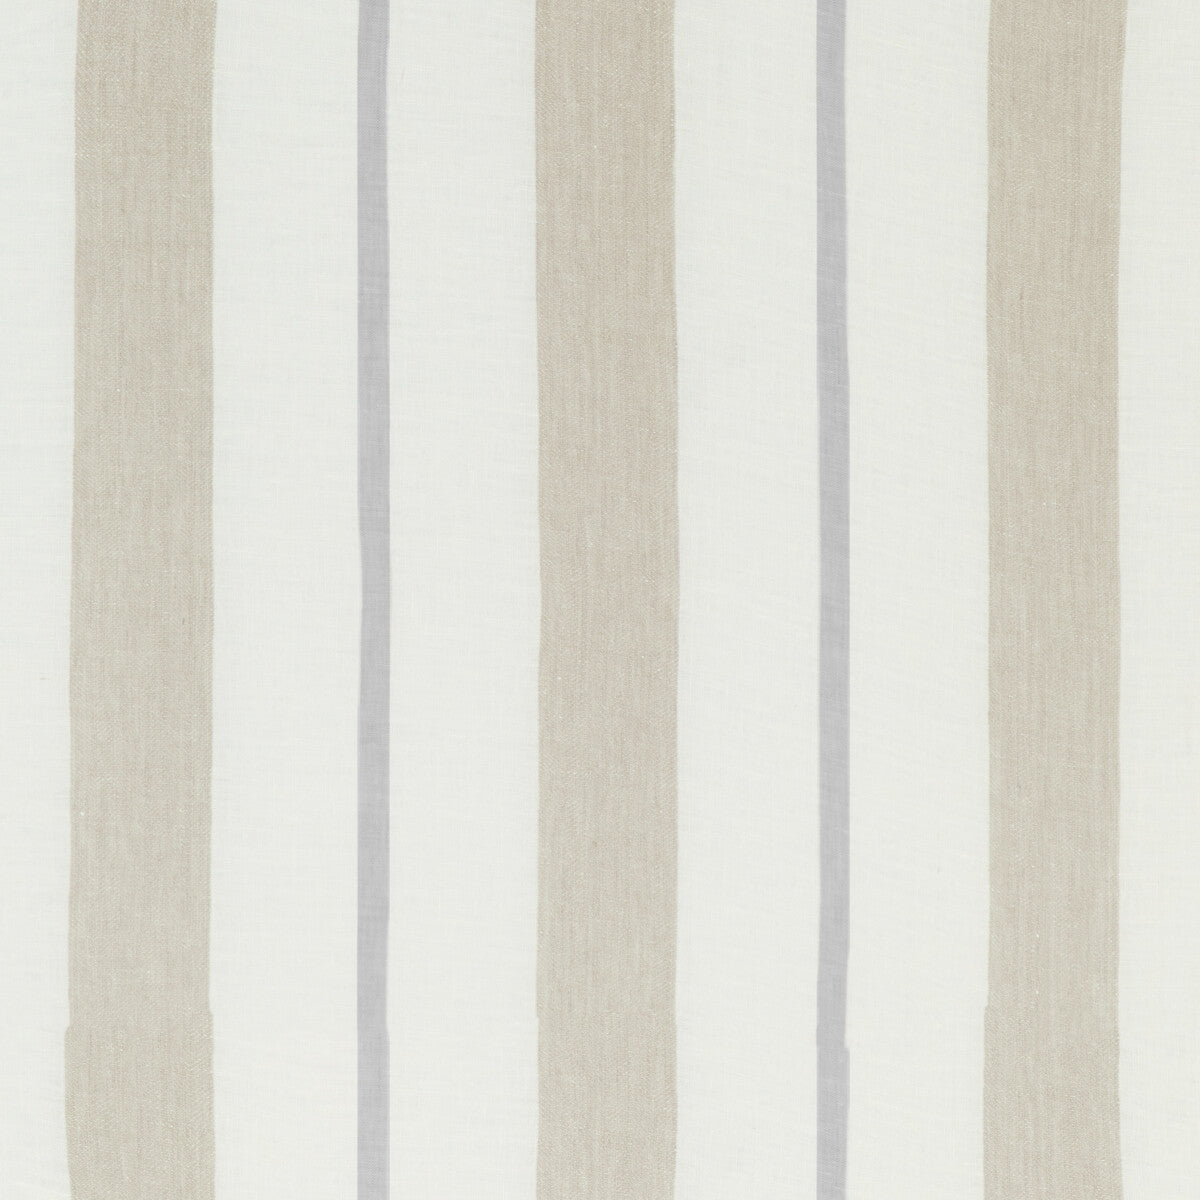 Kravet Design fabric in 4845-116 color - pattern 4845.116.0 - by Kravet Design